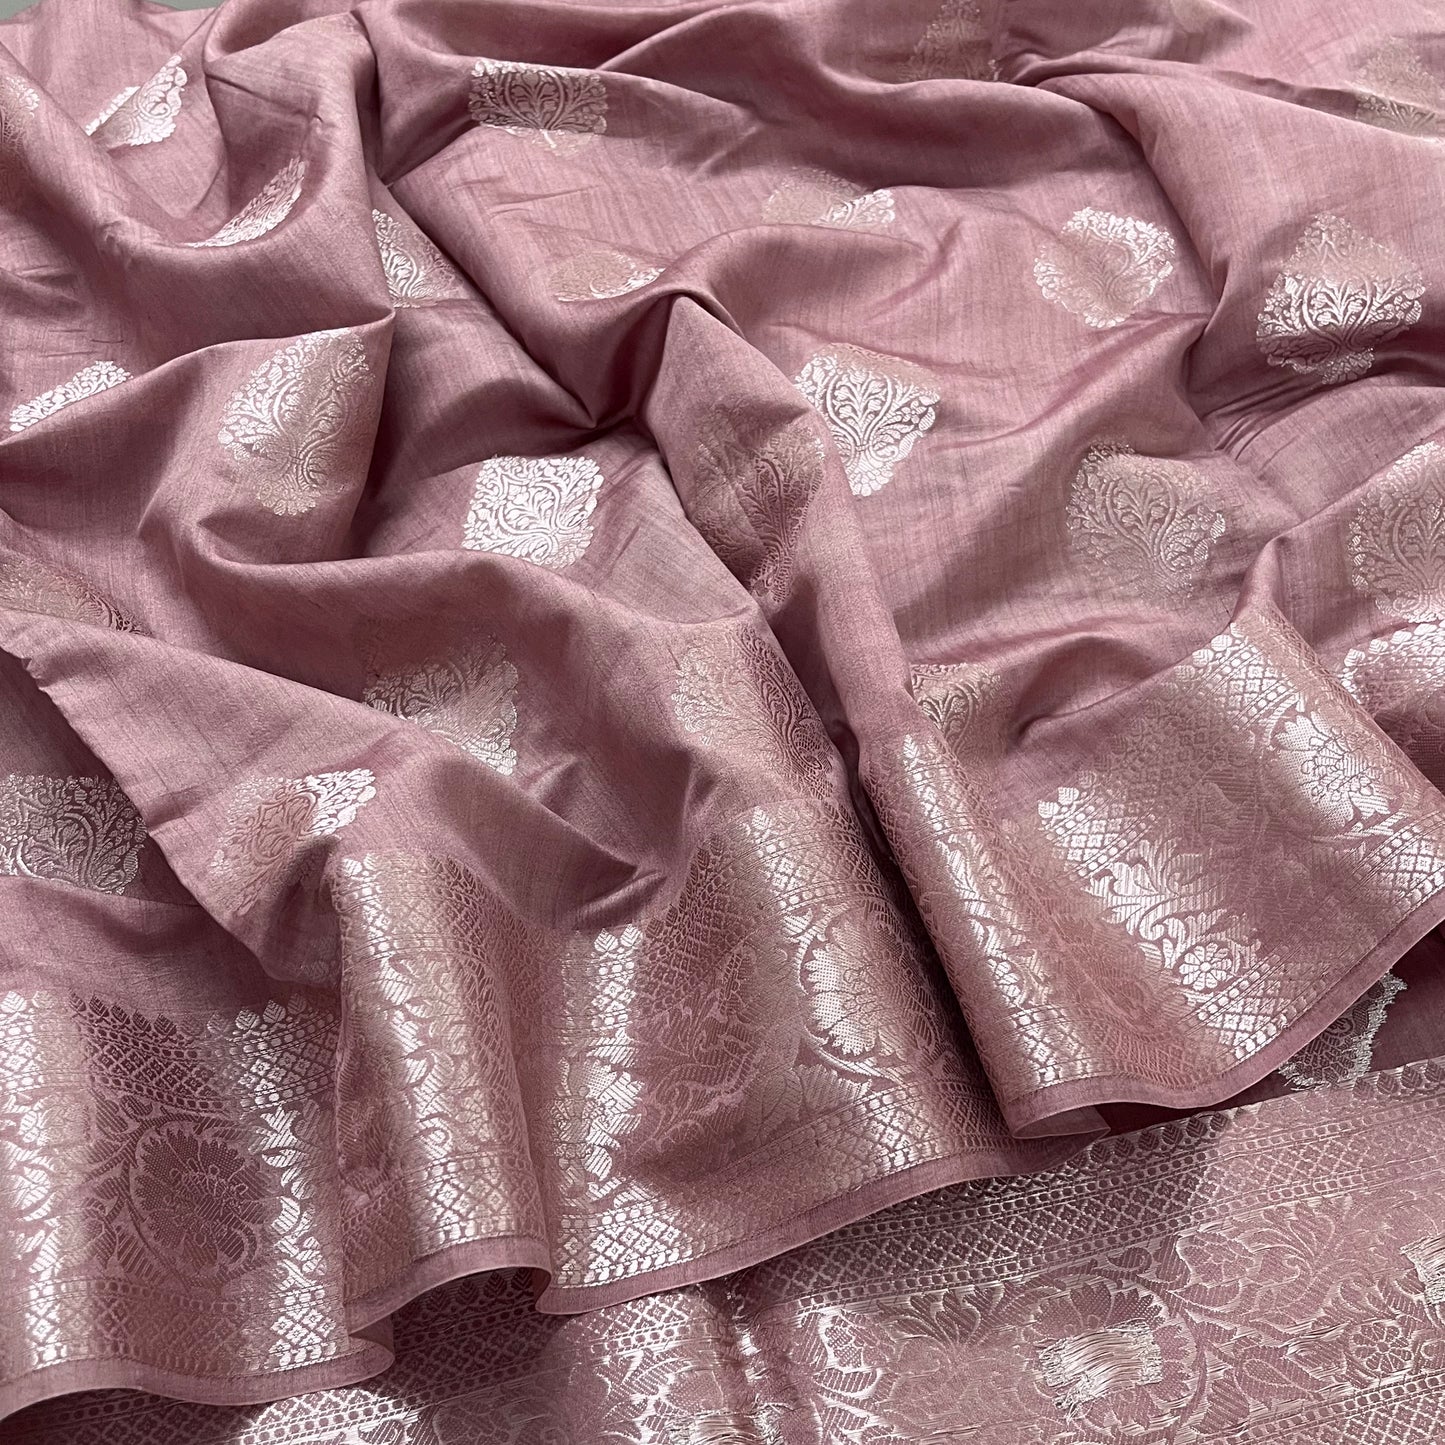 Rust pink banarasi silk saree with zari work all over